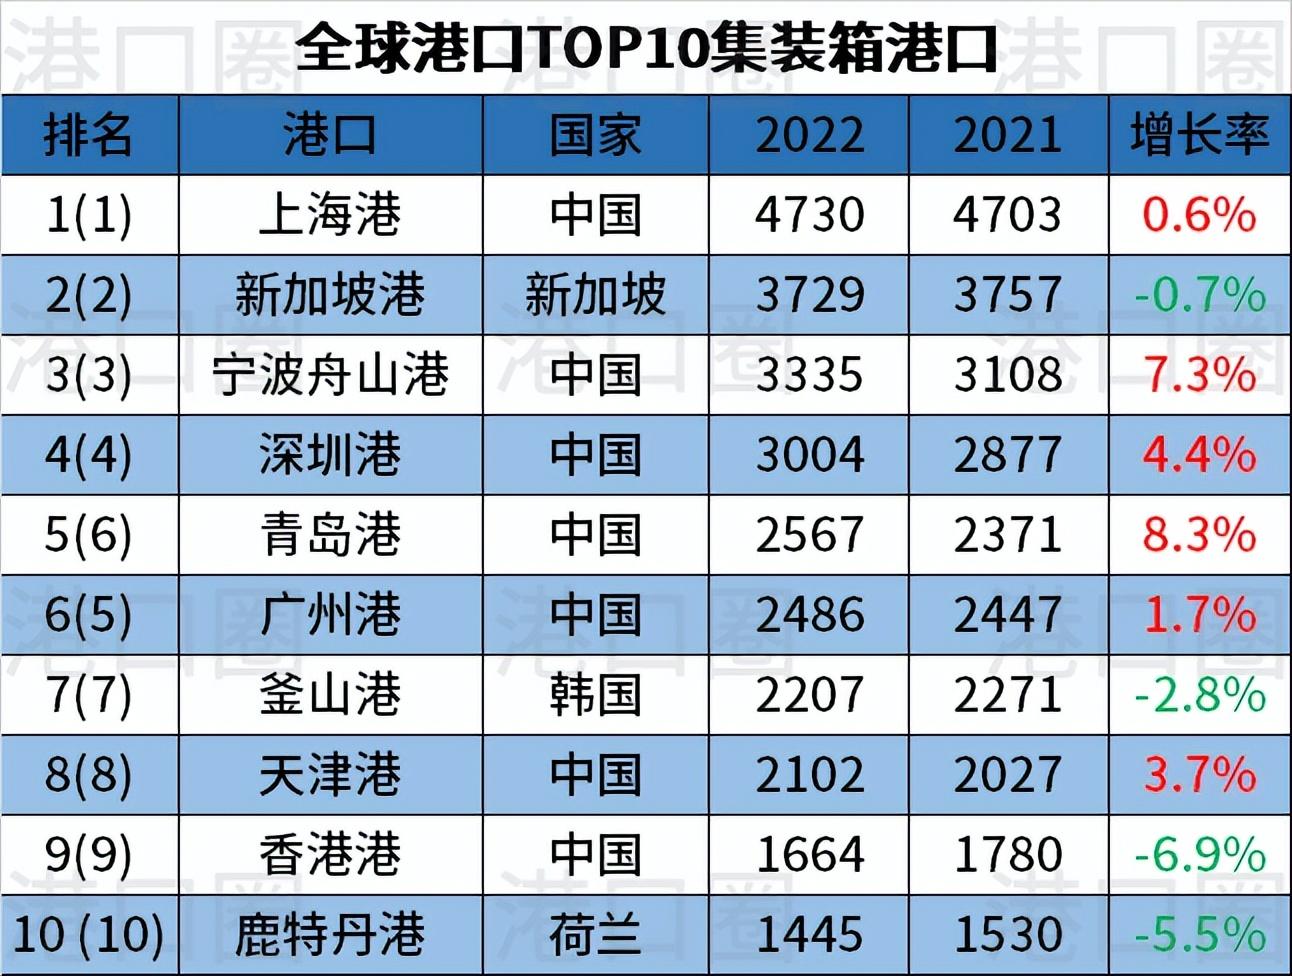 箱港口排名出炉,中国港口占28席),只有香港港与安特卫普港吞吐量微跌